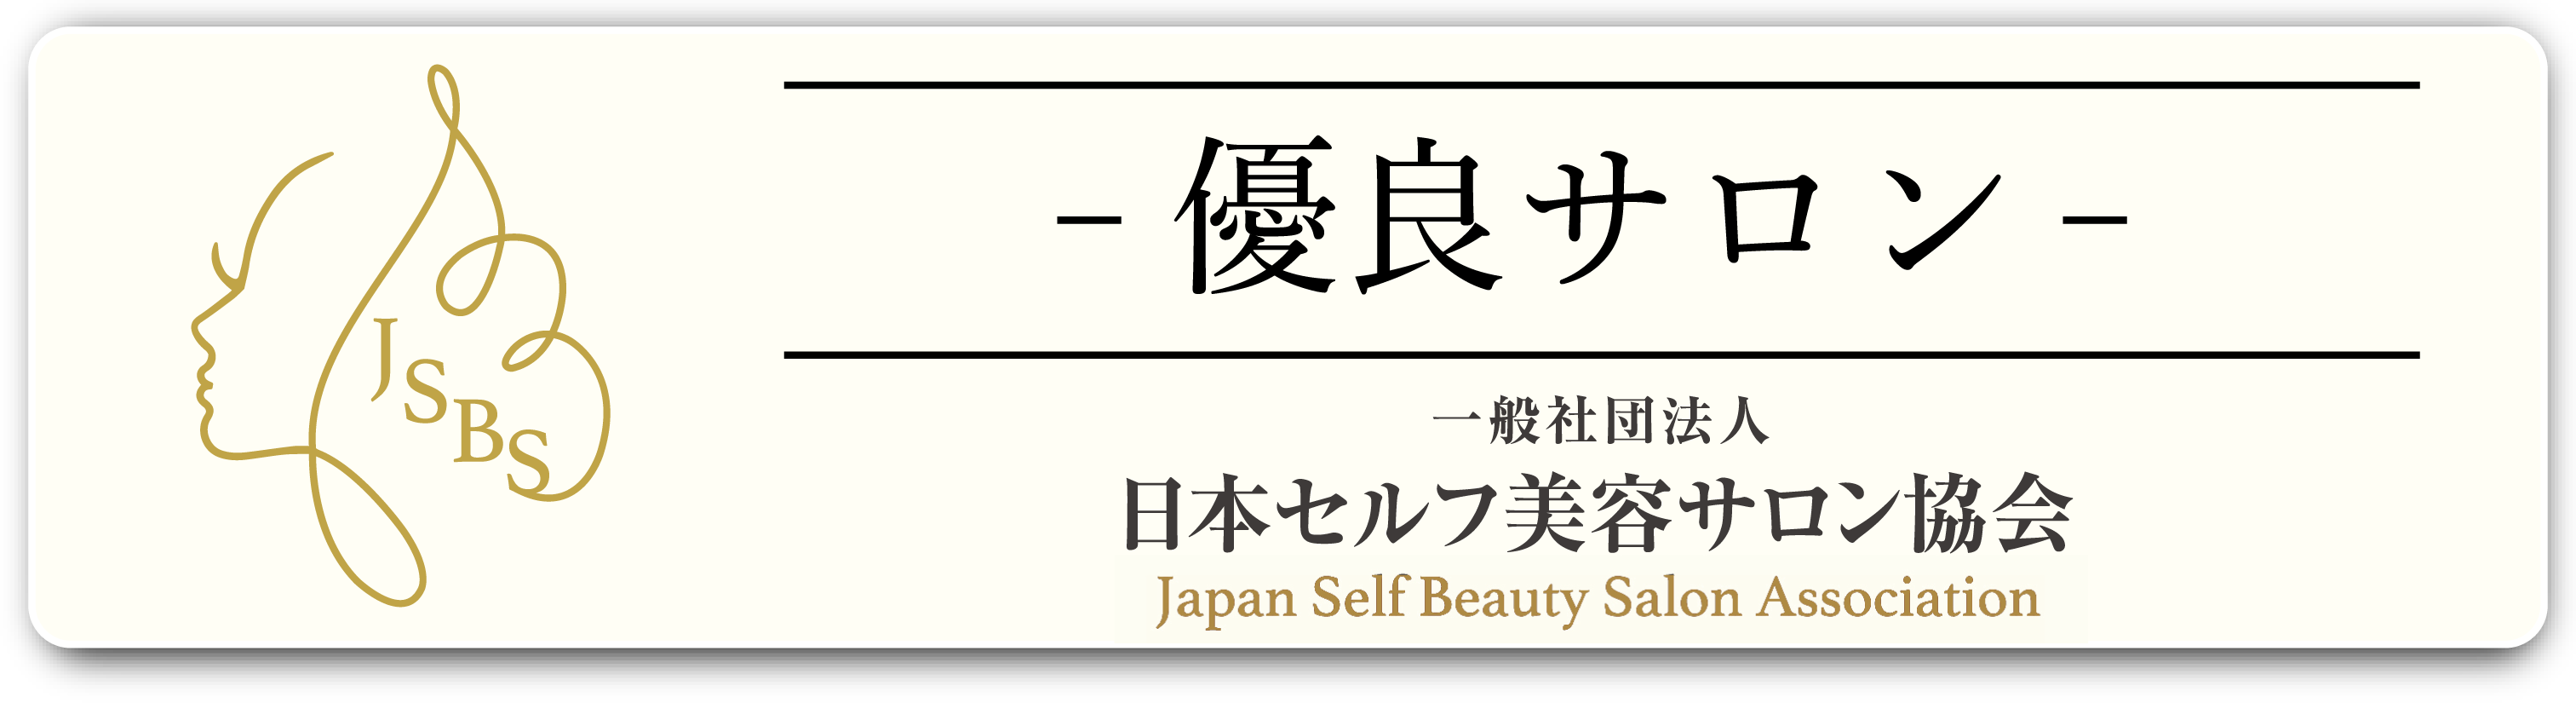 一般社団法人 日本セルフ美容サロン協会 Japan Self Beauty Salon Association